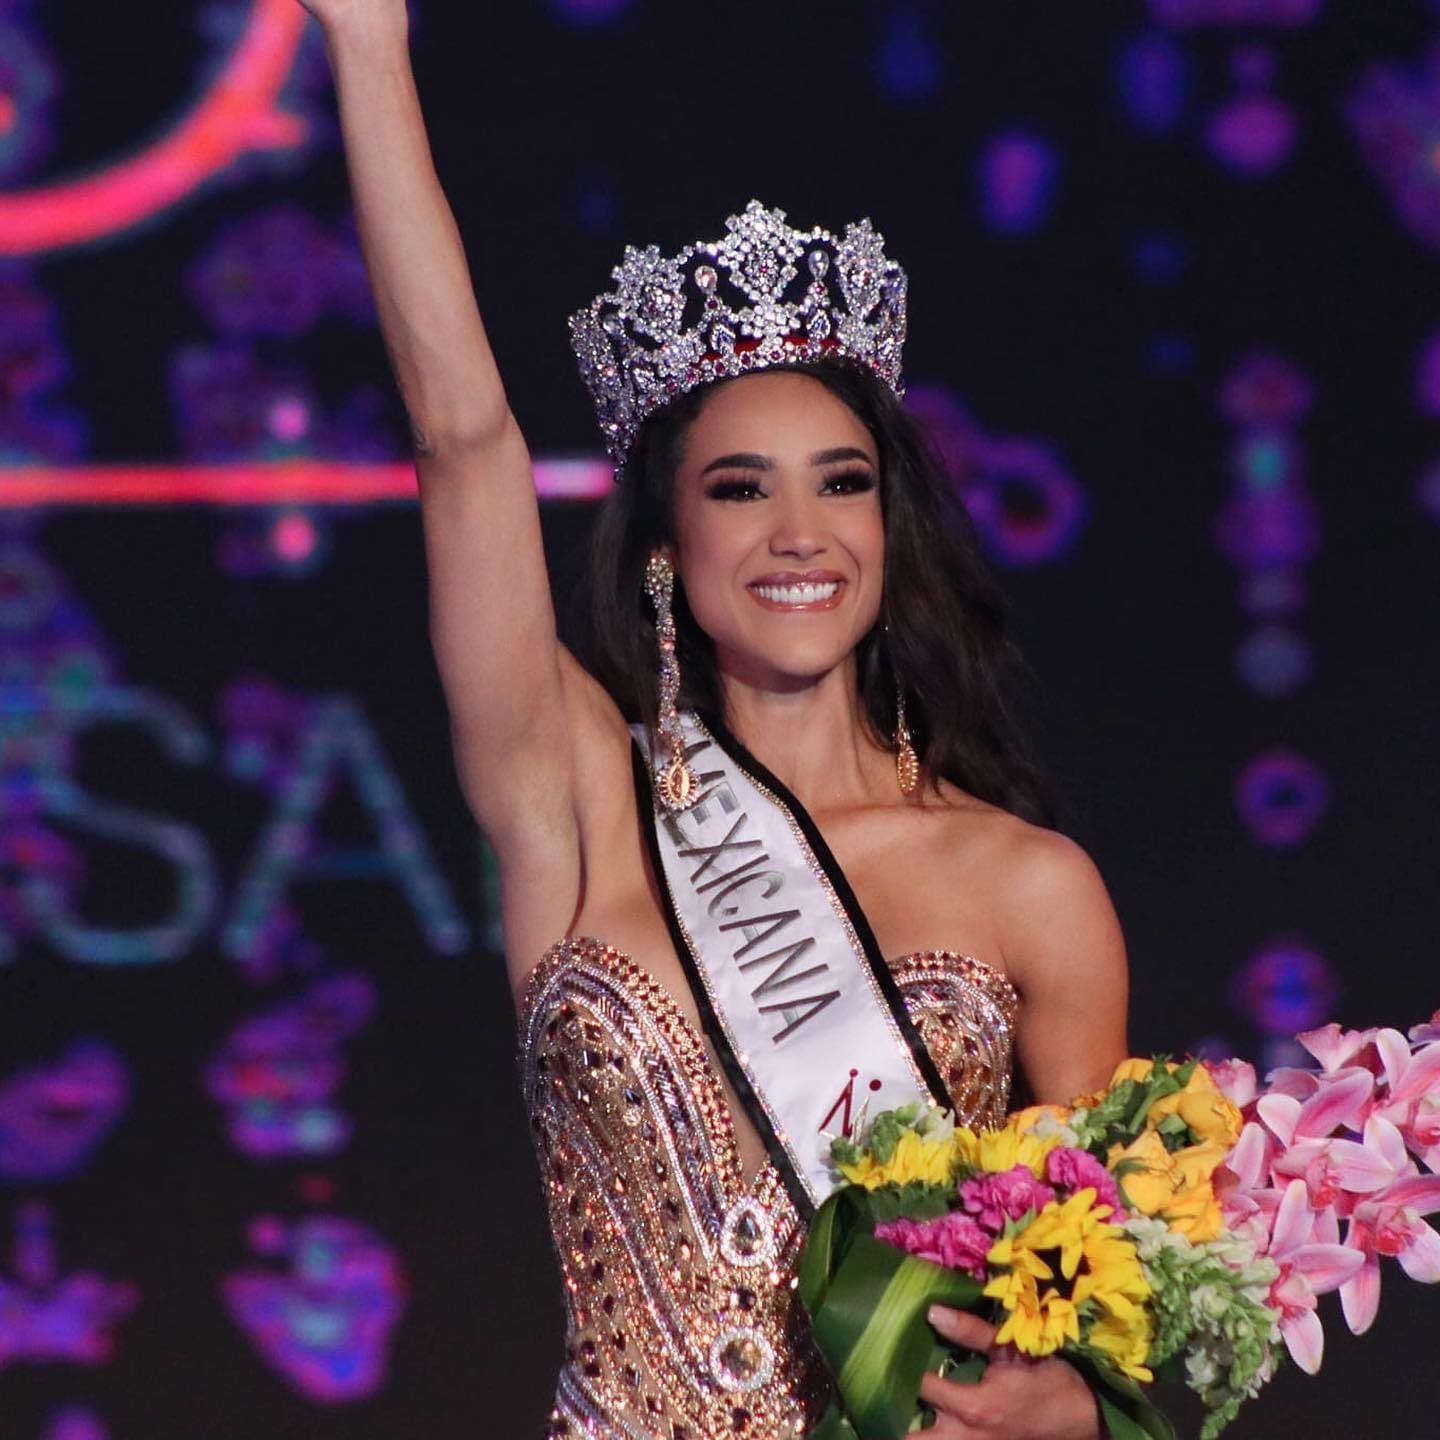 Who Is Irma Miranda Miss Mexico 2022